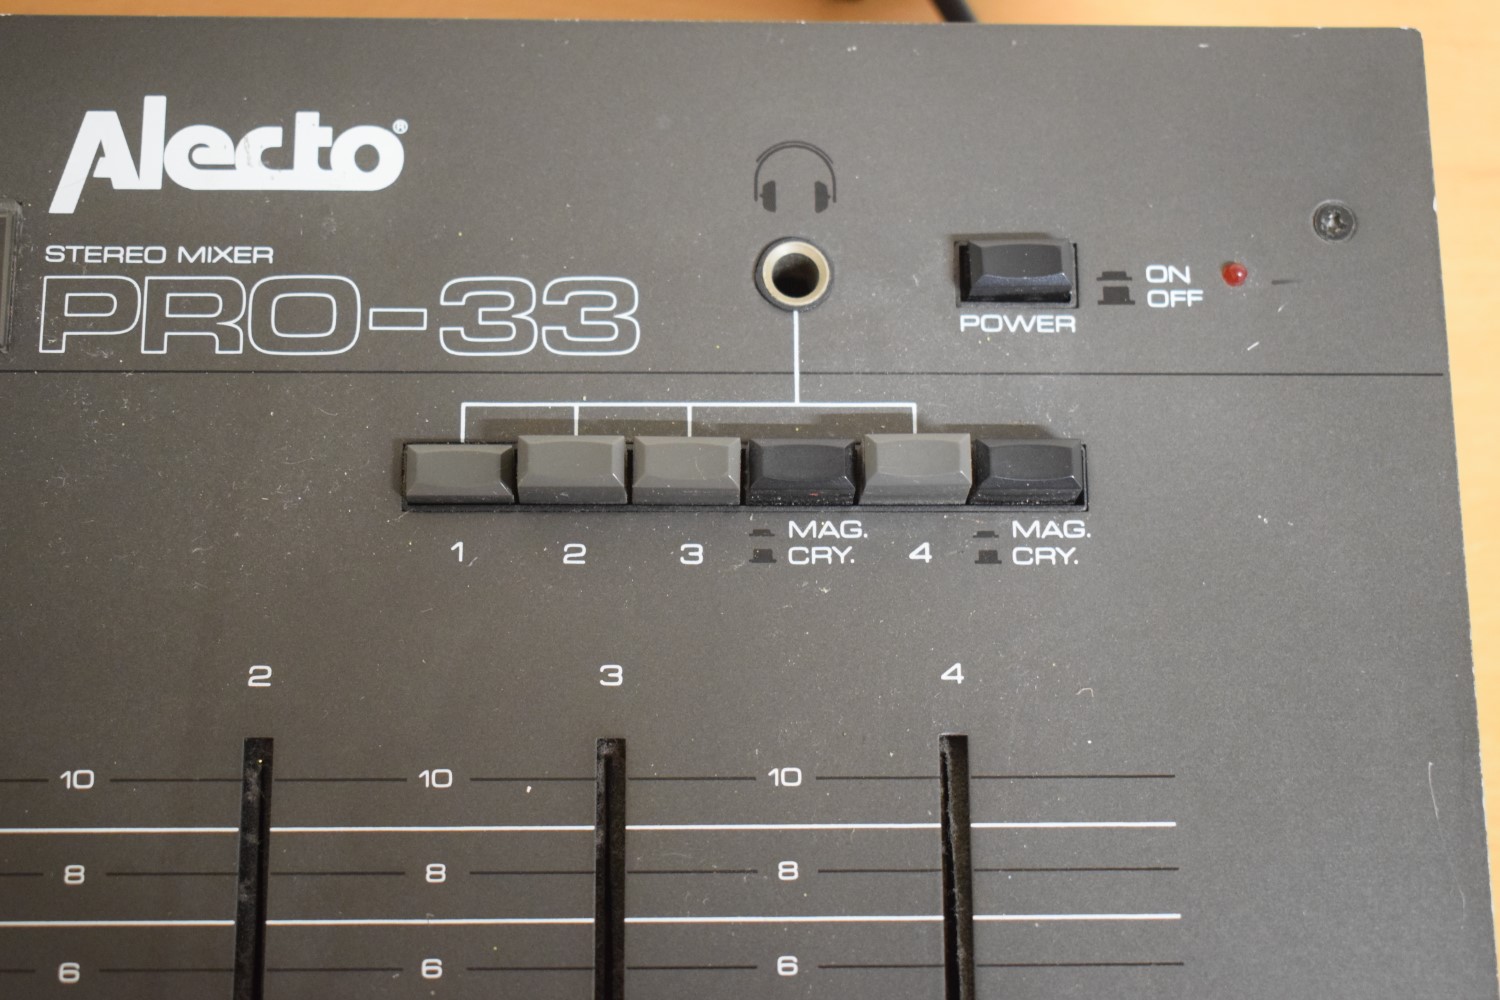 Alecto PRO-33 analog mixer